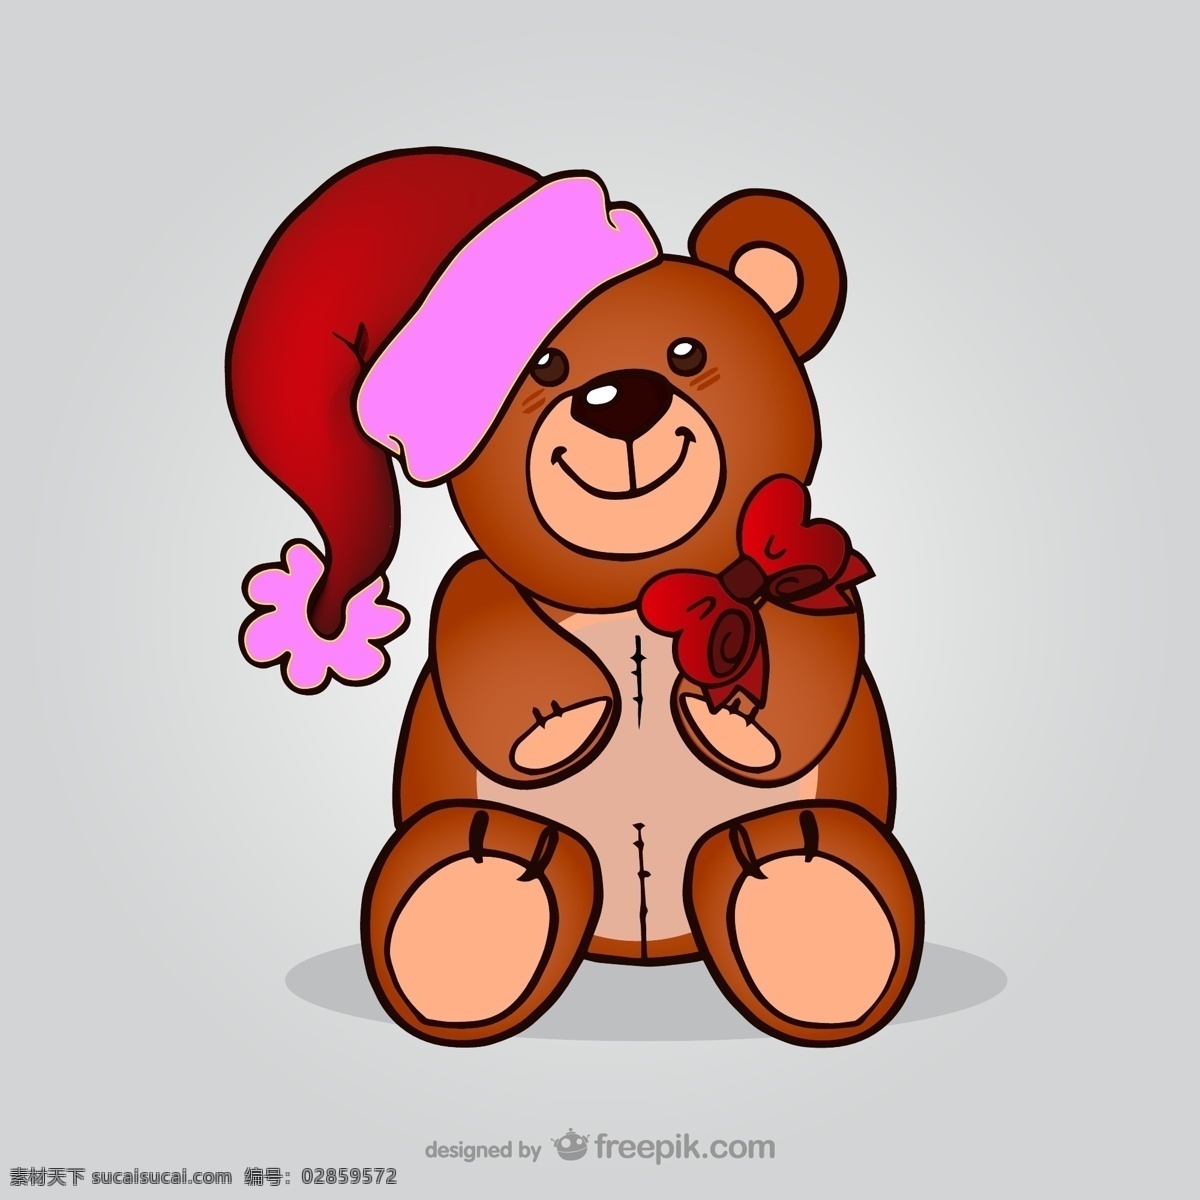 戴 圣诞 帽 玩具 熊 矢量 圣诞帽 圣诞节 节日 贺卡 卡片 庆祝 祝福 小熊 玩具熊 蝴蝶 蝴蝶结 卡通 插画 动物 背景 海报 画册 矢量动物 生物世界 野生动物